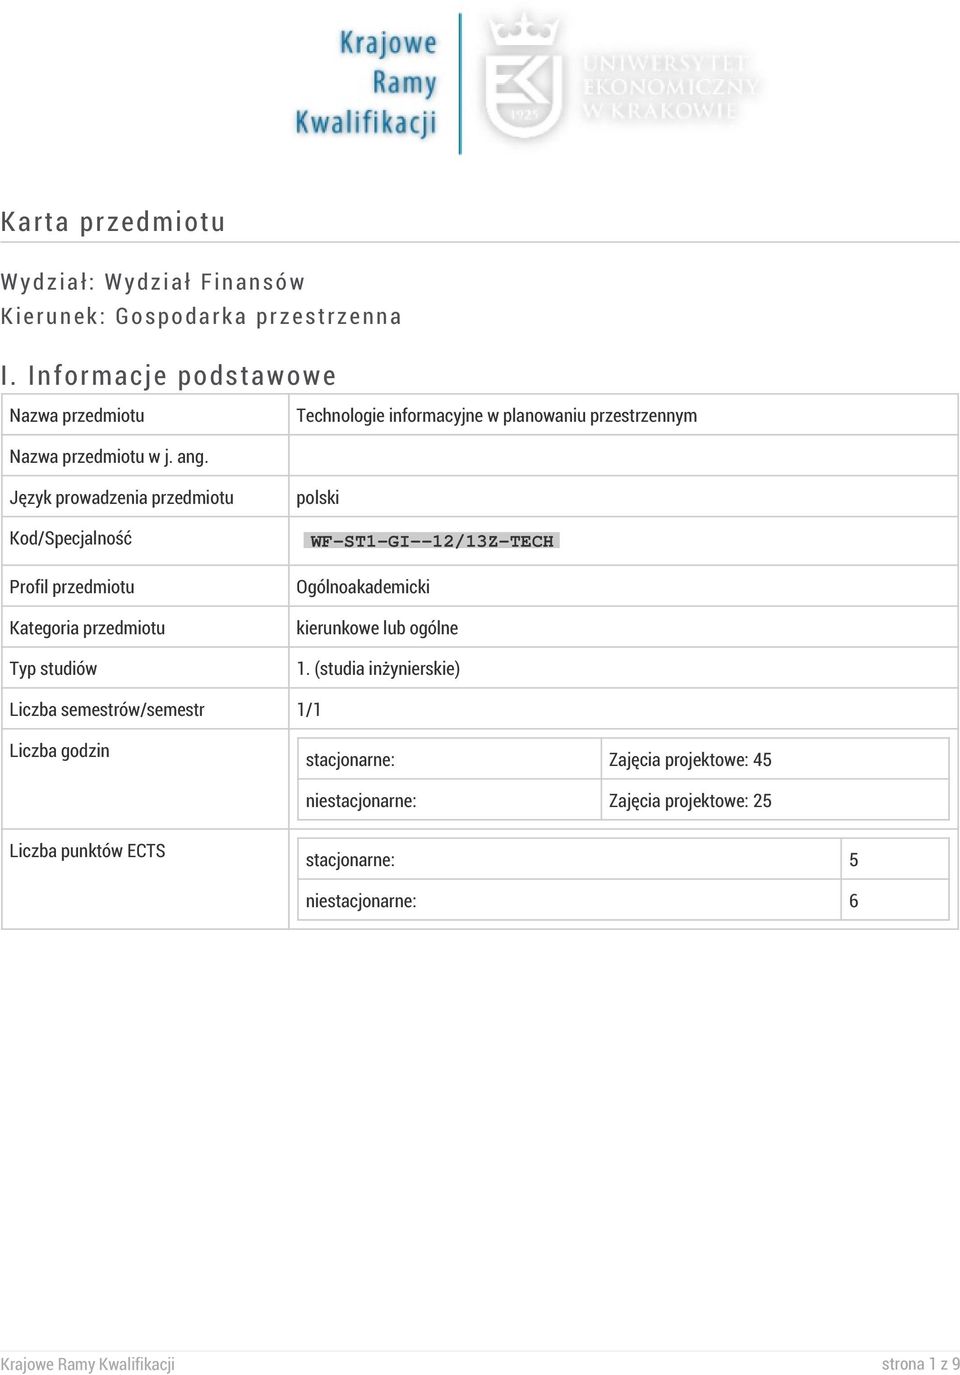 Język prowadzenia przedmiotu Kod/Specjalność Profil przedmiotu Kategoria przedmiotu Typ studiów polski WF-ST1-GI--12/13Z-TECH Ogólnoakademicki